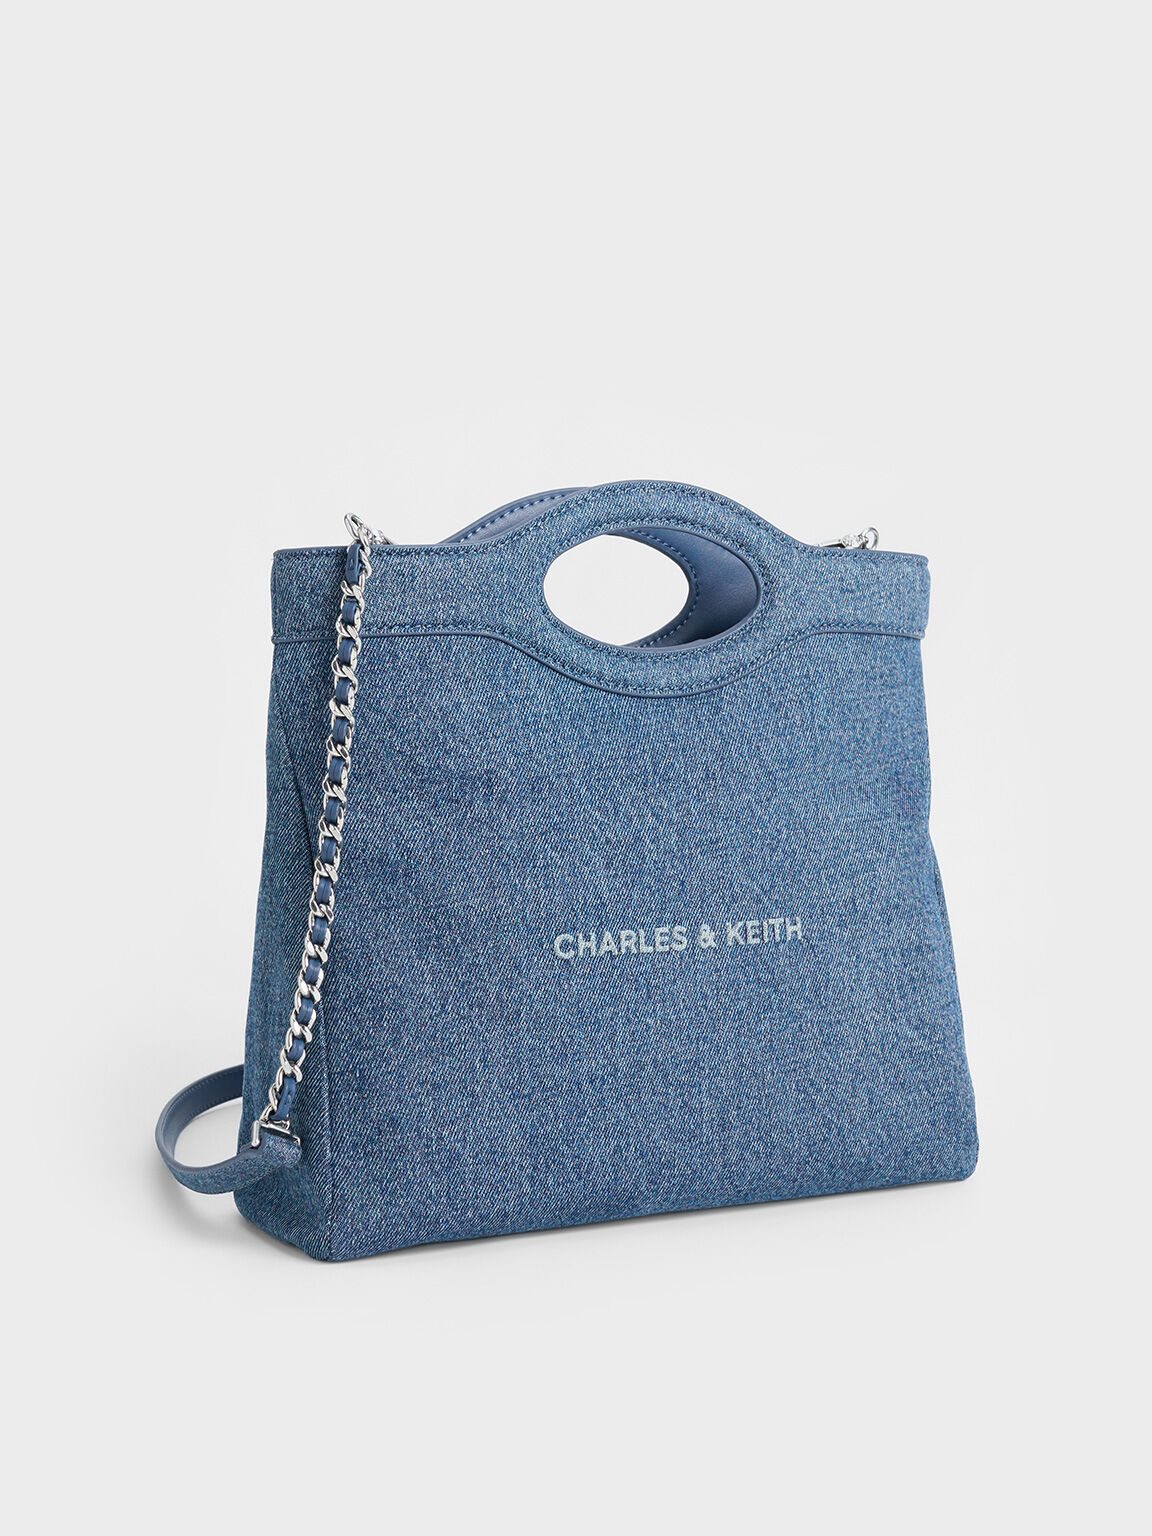 Arwen Denim Curved-Handle Bag, Denim Blue, hi-res